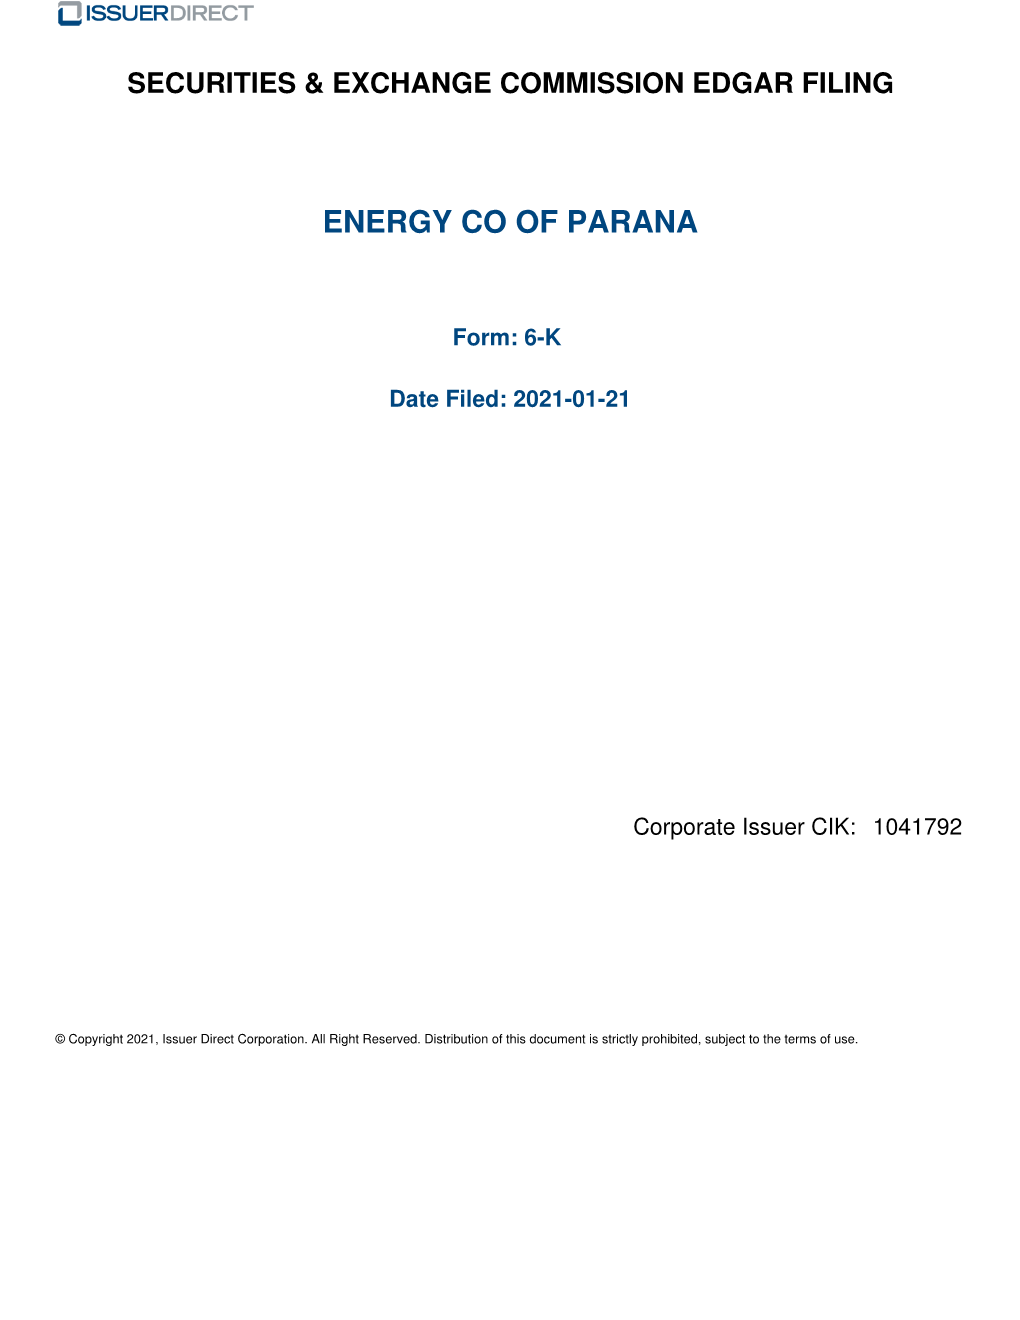 Energy Co of Parana